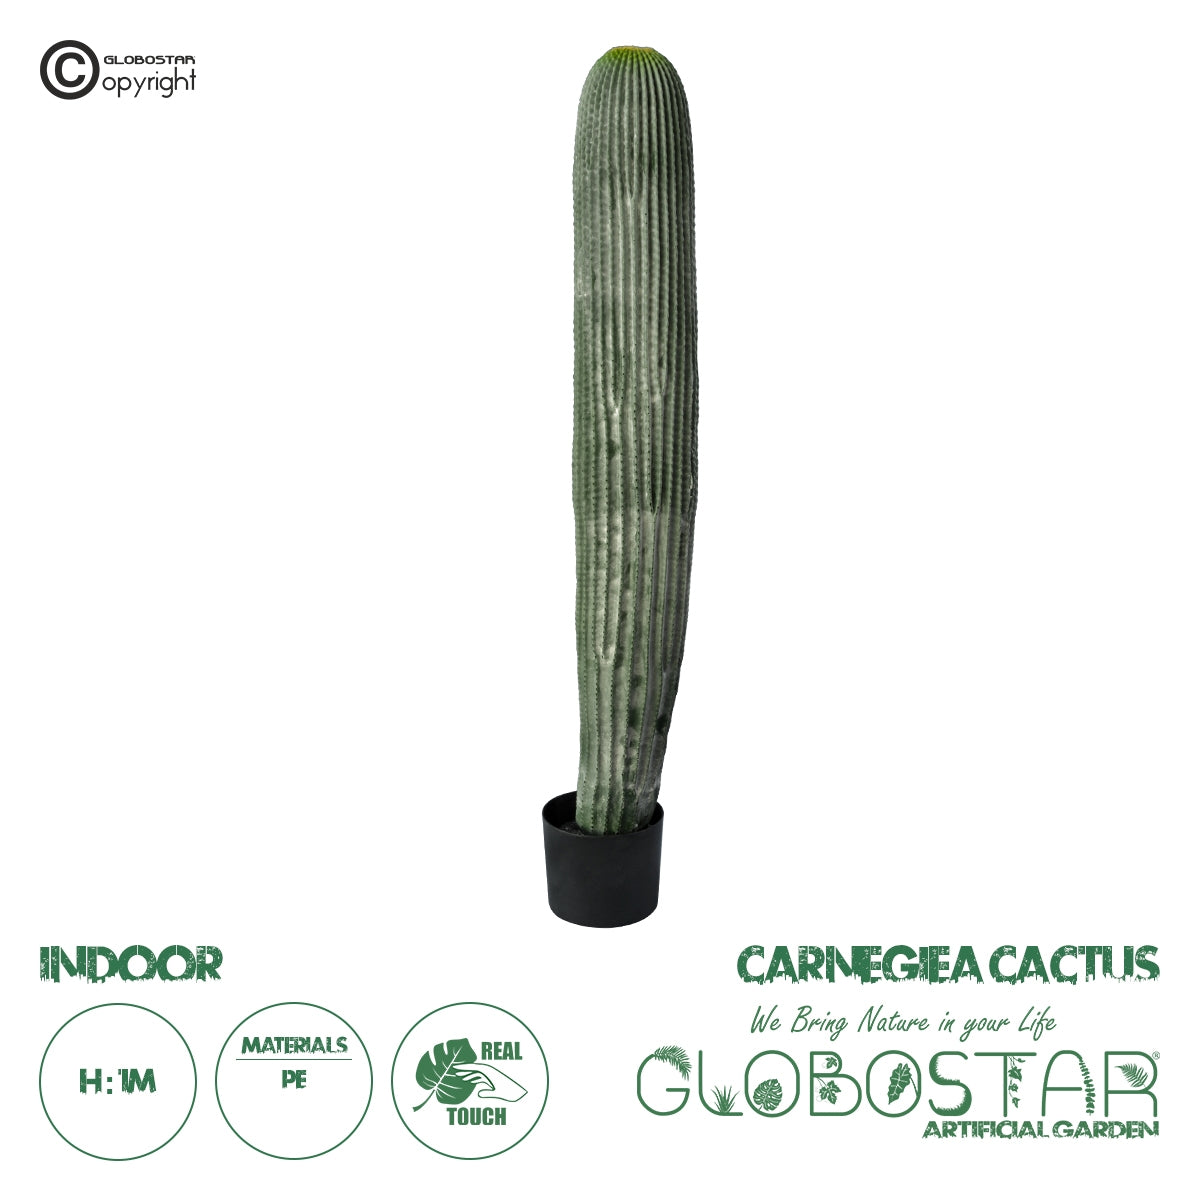 GloboStar® Artificial Garden CARNEGIEA CACTUS 20126 Τεχνητό Διακοσμητικό Φυτό Κάκτος Σαγκουάρο Υ100cm